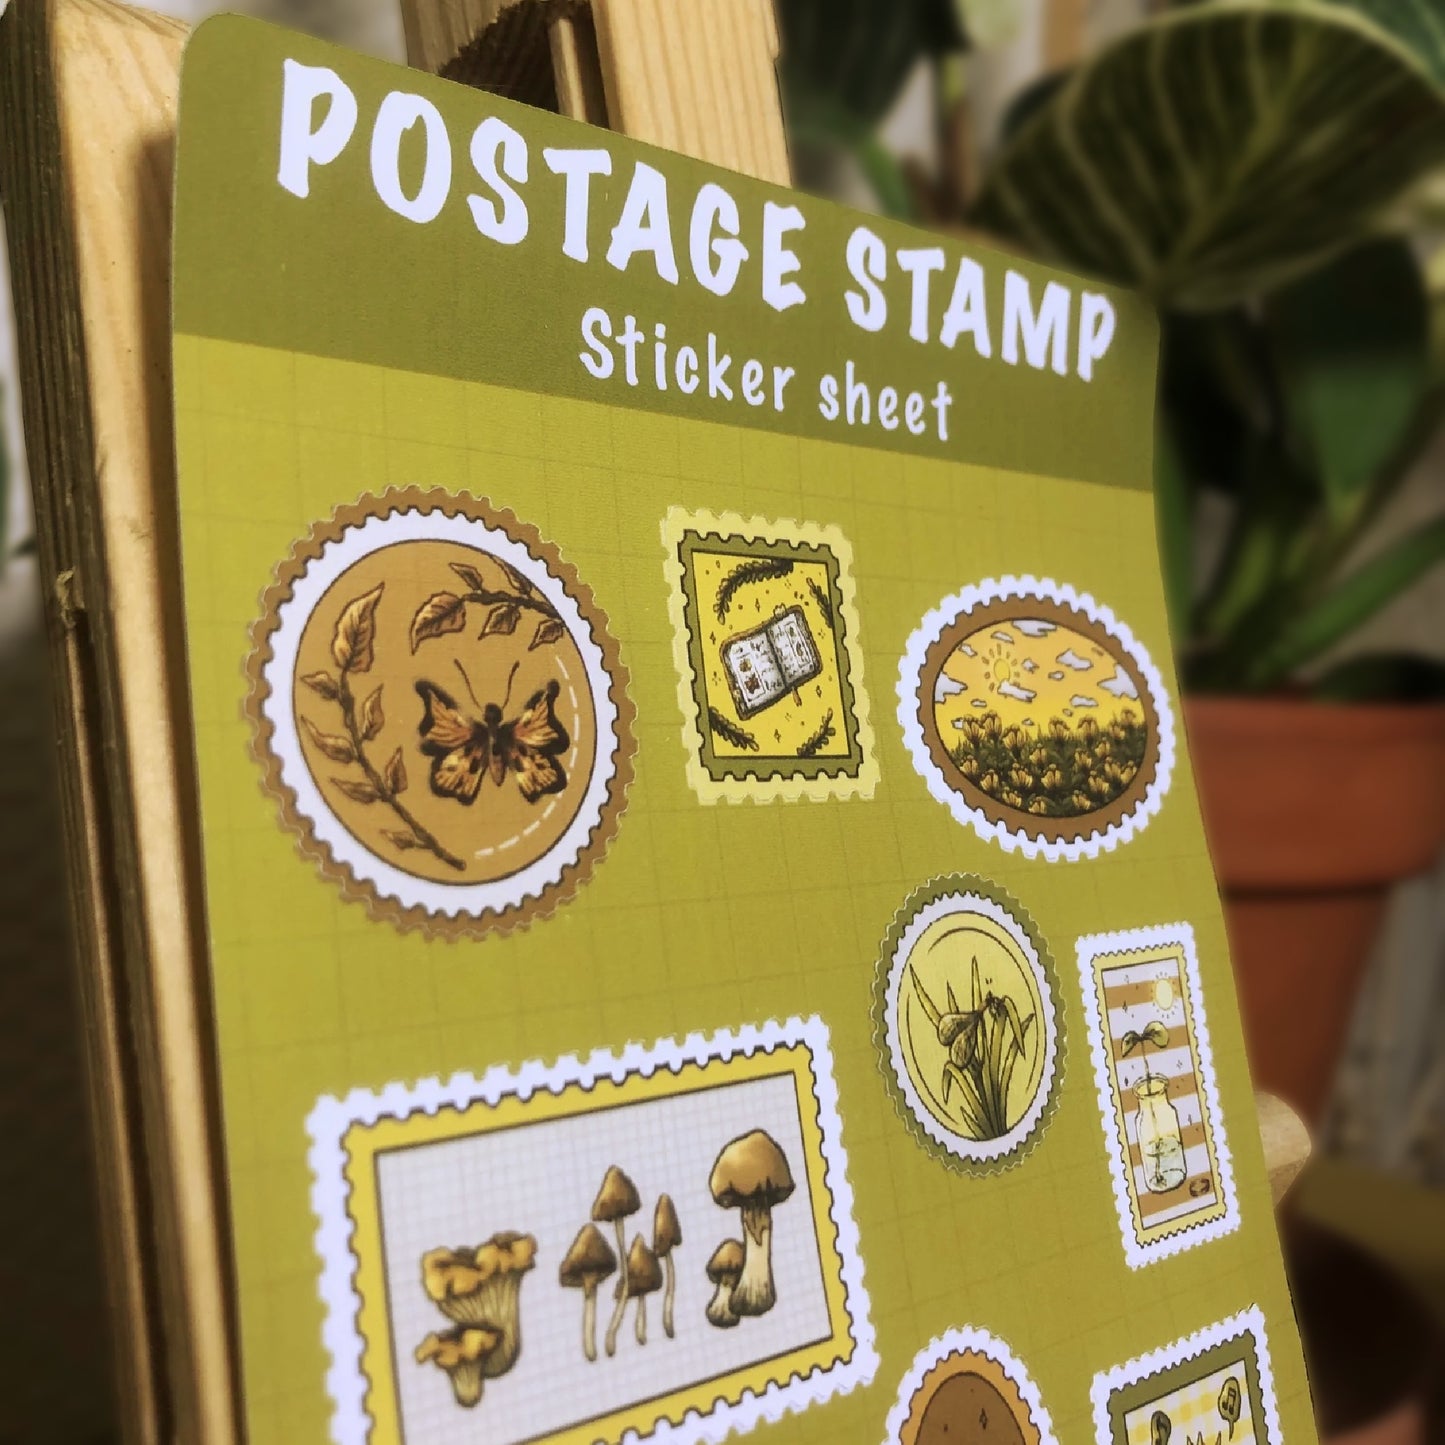 Sticker sheet - Postage stamp